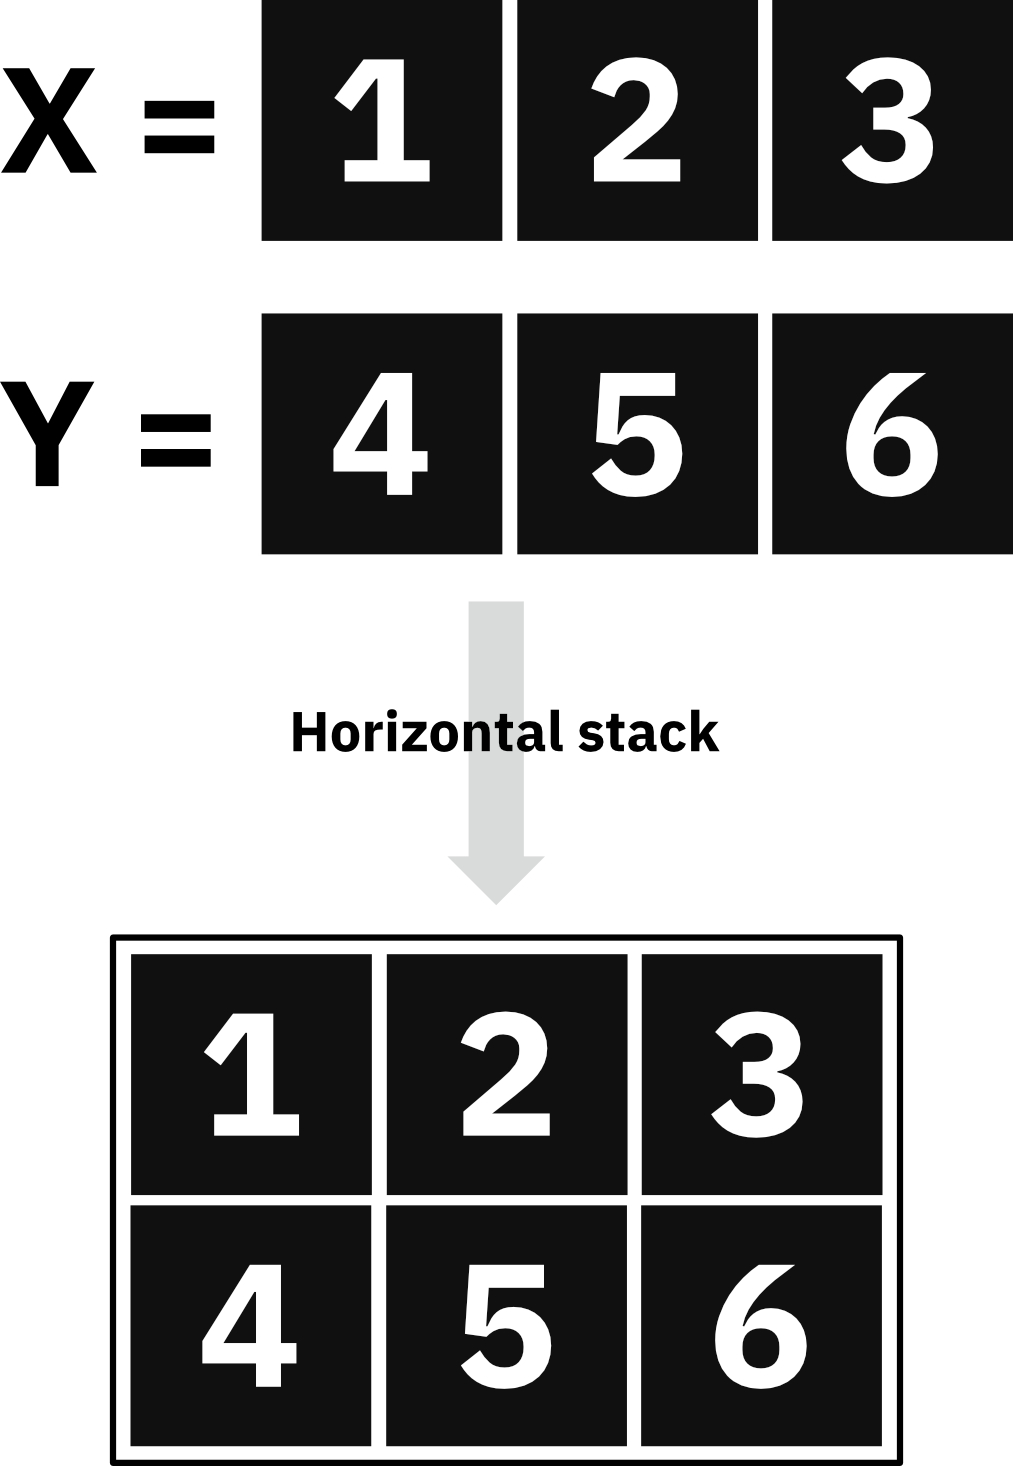 Image 1 - Horizontal stacking explained (image by author)